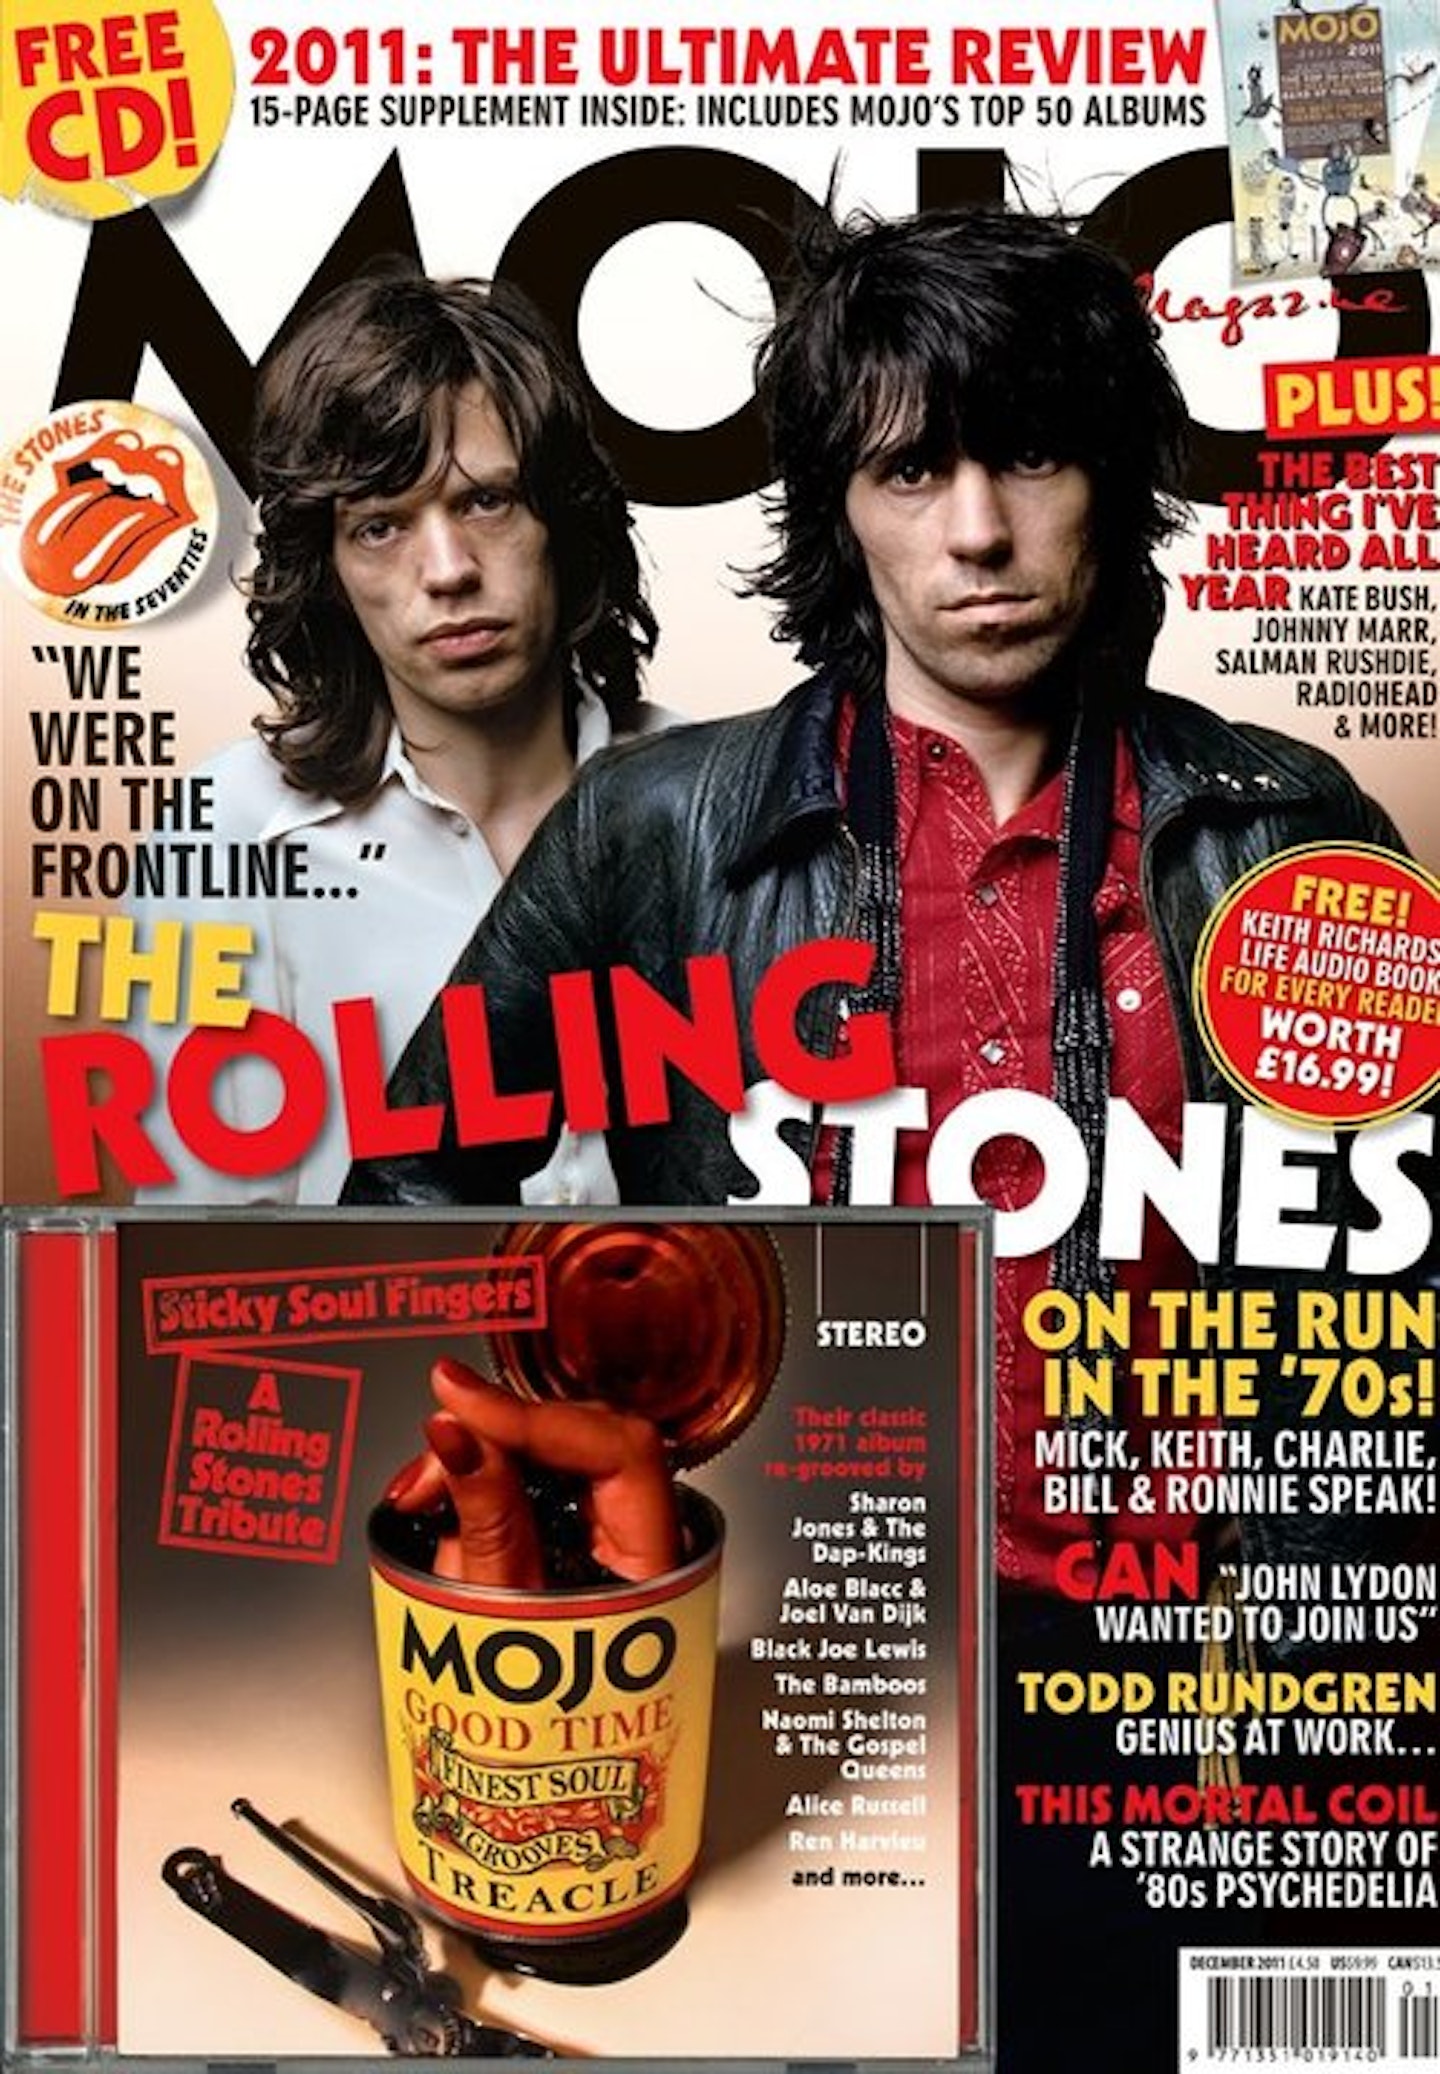 MOJO Issue 218 / January 2012